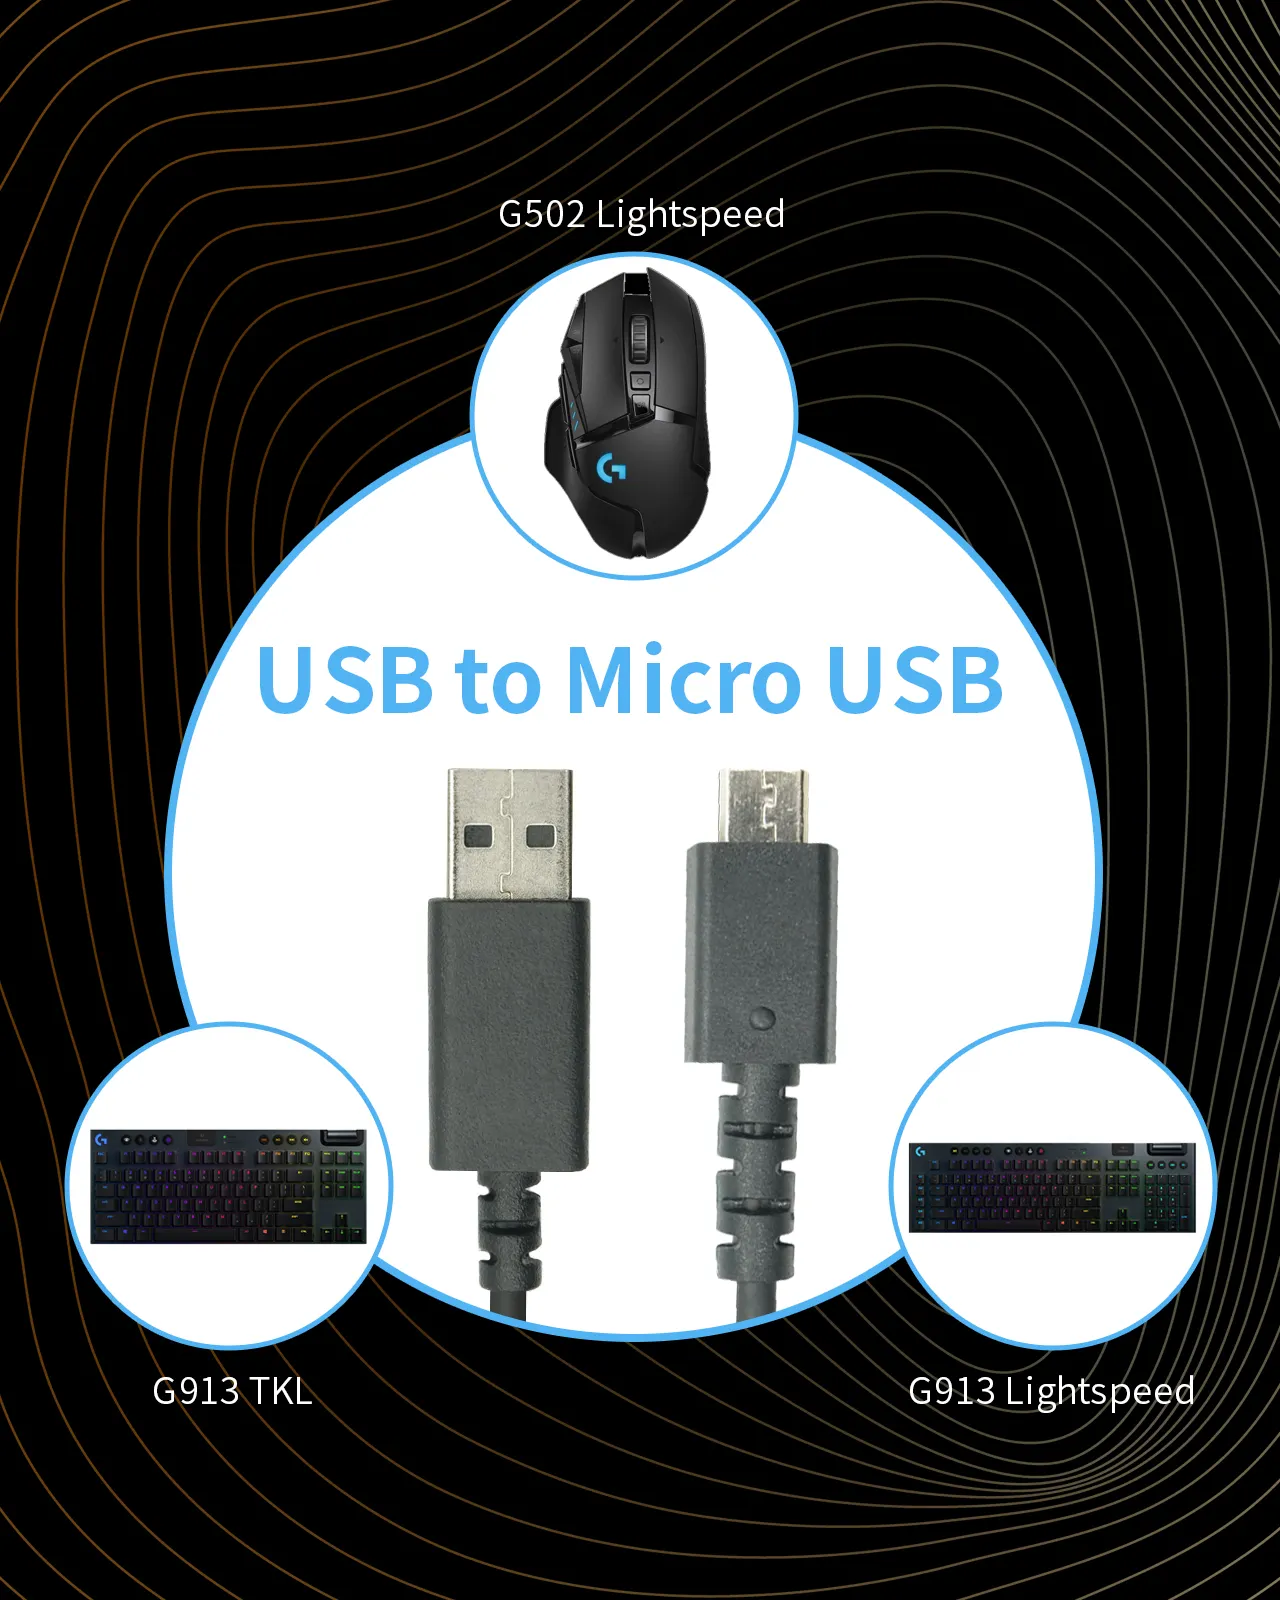 כבל טעינת USB מקורי של לוג'טיק לעכבר גיימינג אלחוטי במהירות אור G502/G913 מקלדת TKL USB למיקרו USB (שחור)